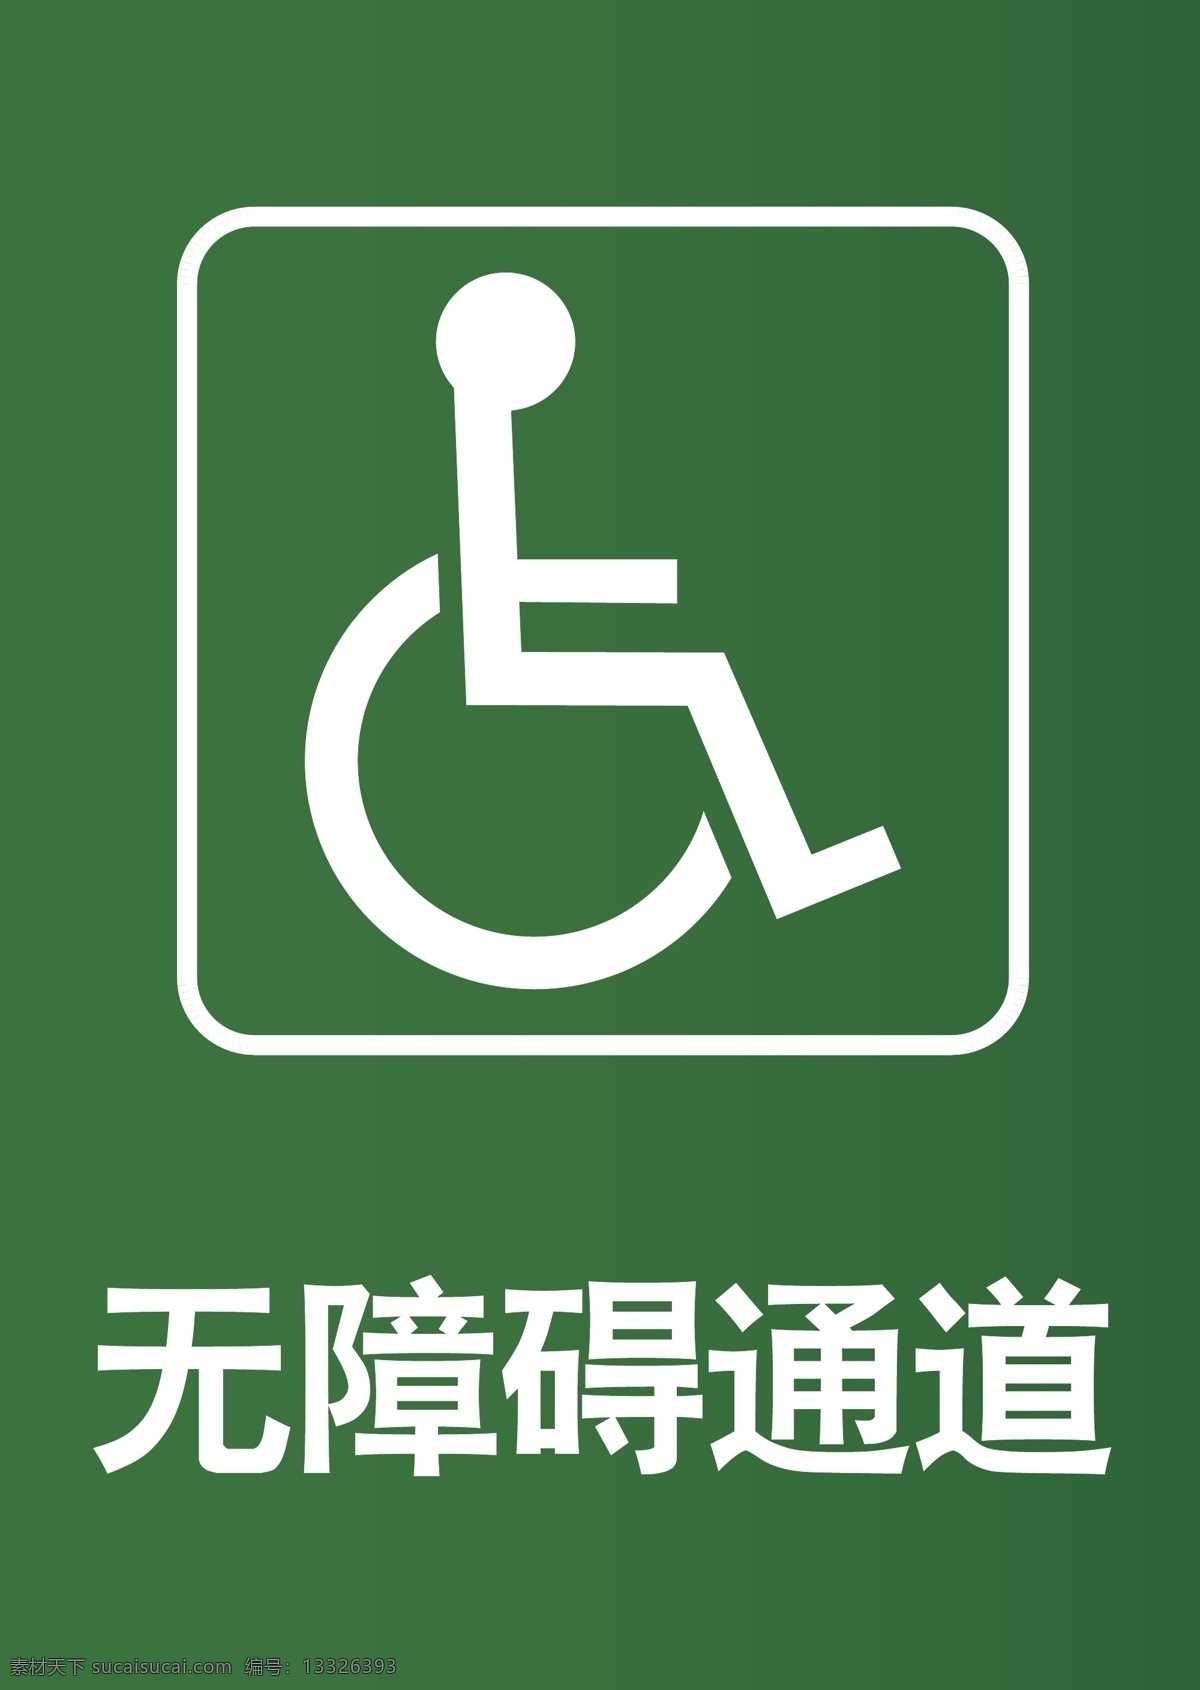 无障碍 通道 知识 标识 矢量图 无障碍通道 公共安全标识 医院标识 轮椅通道 绿色通道标识 残疾人标识 公共标识 招贴设计